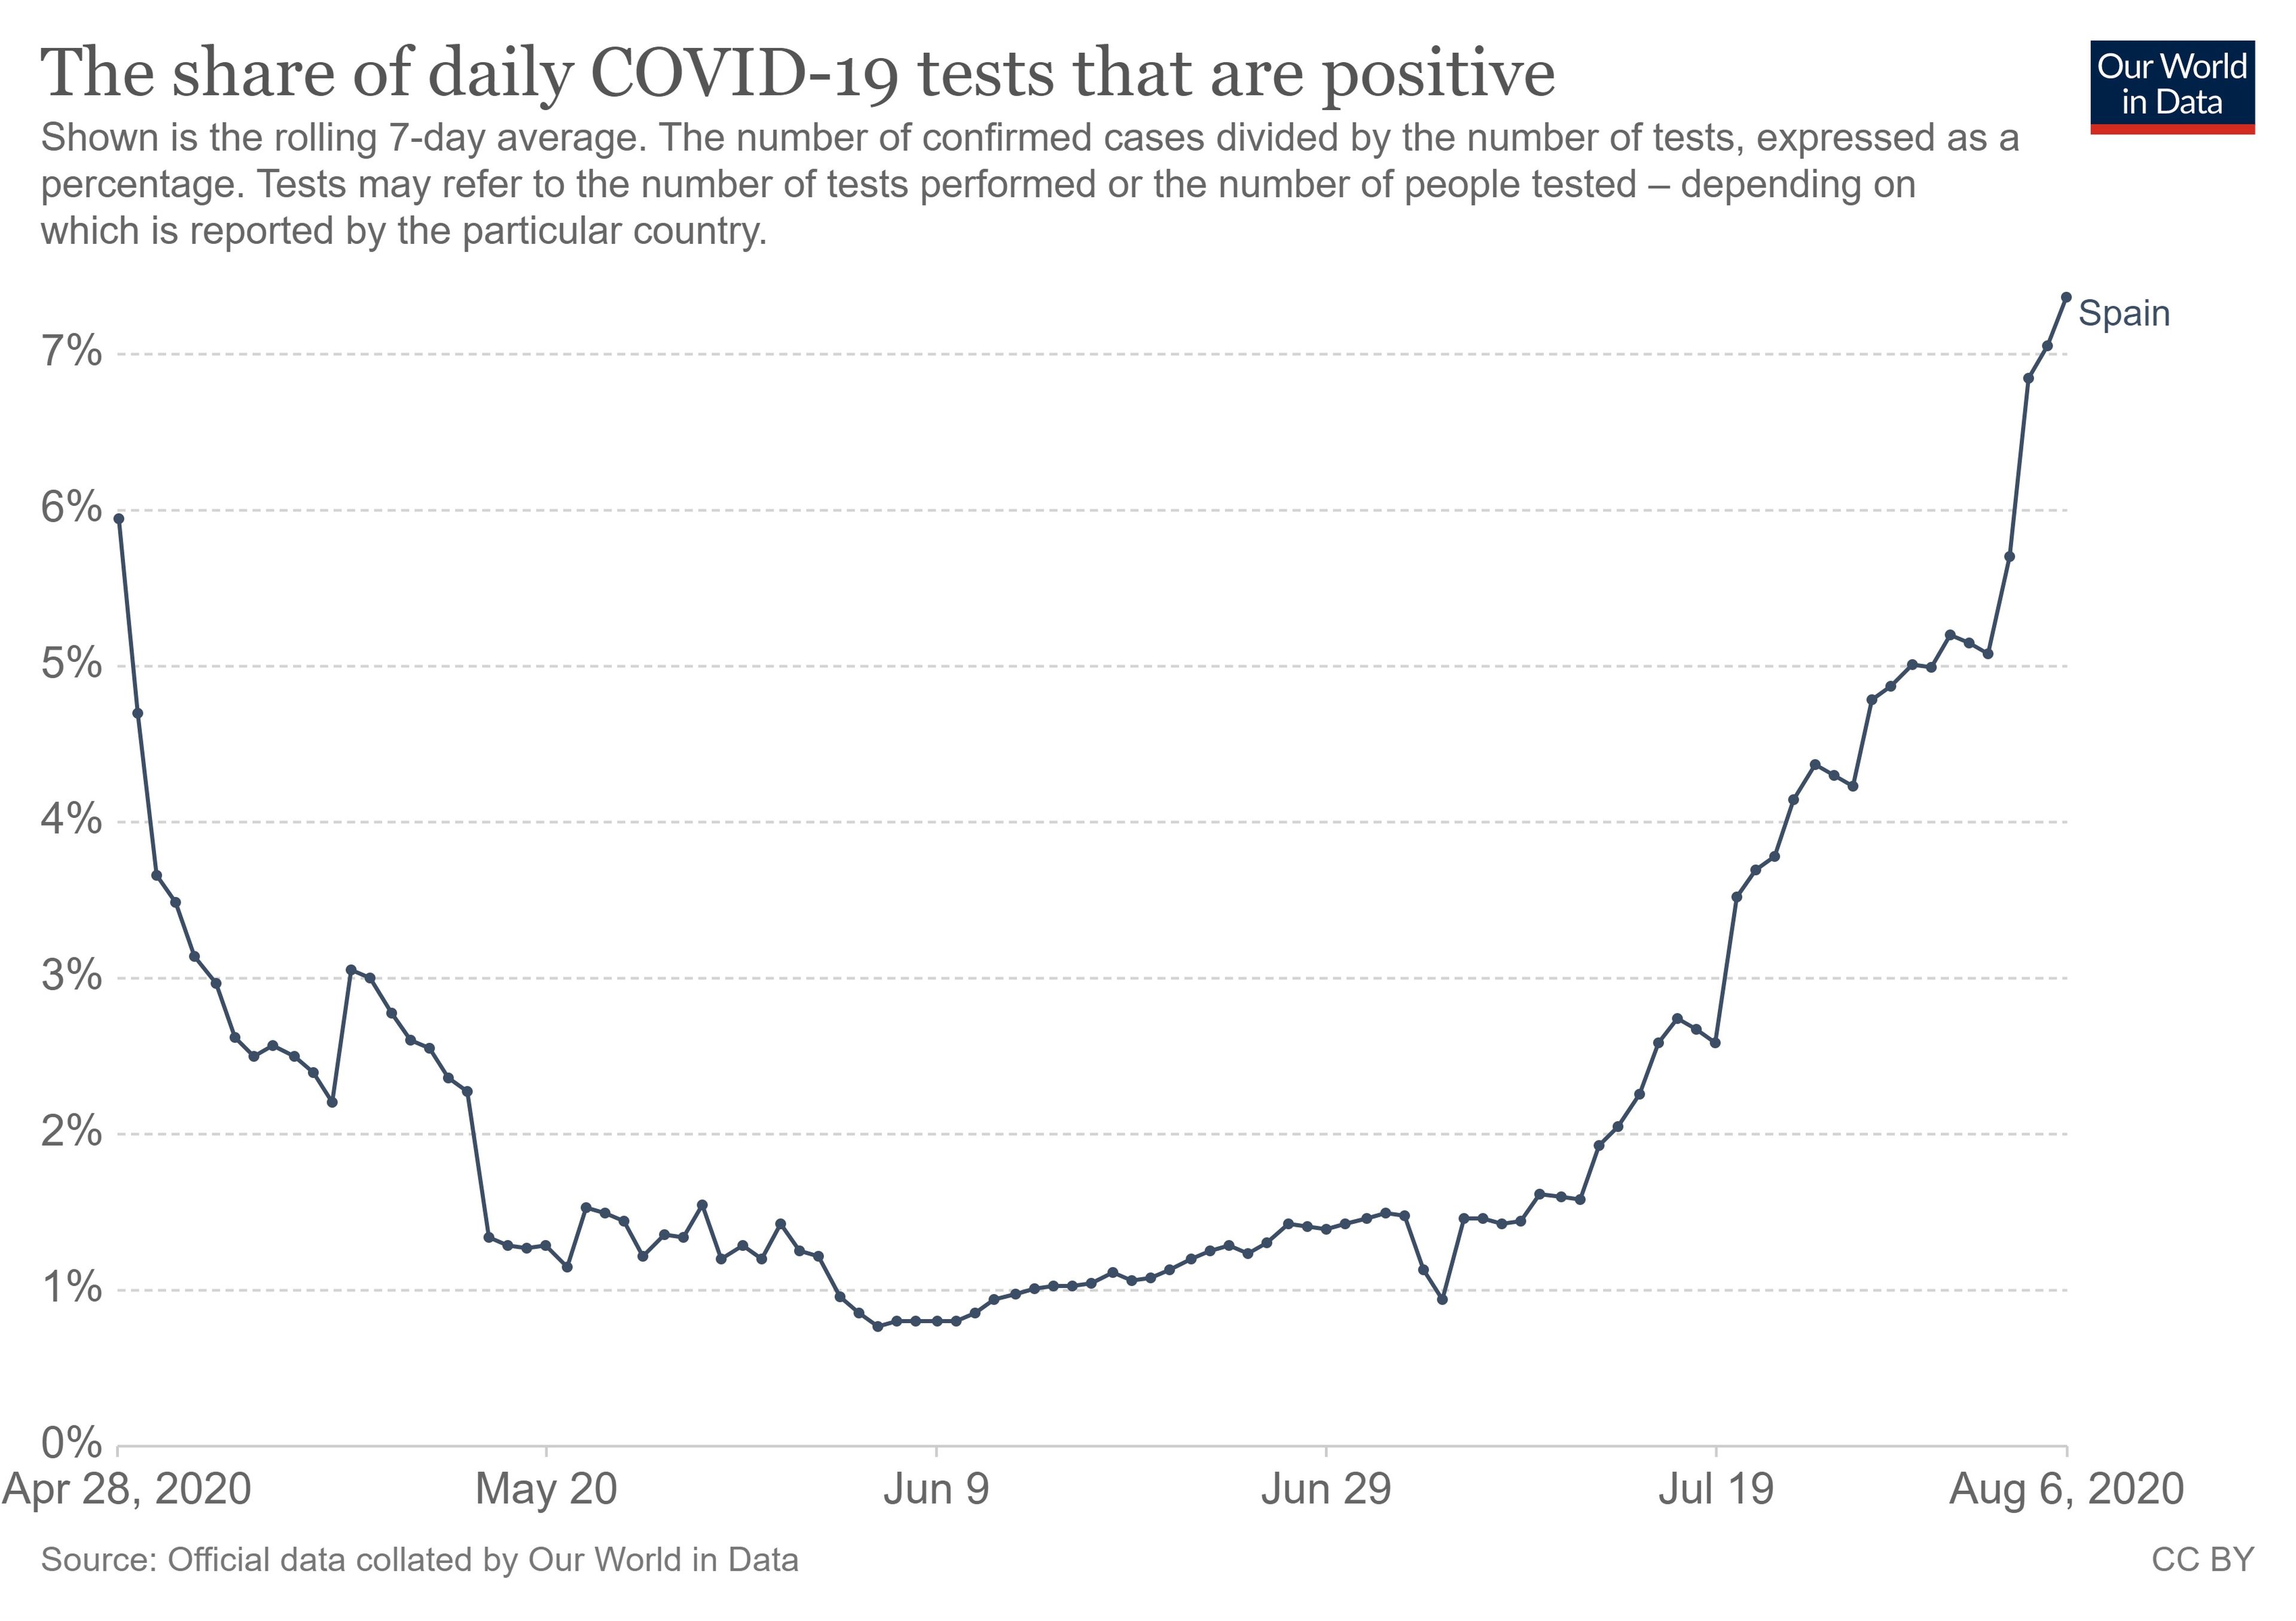 Porcentaje de positivos de COVID-19 respecto al total de pruebas diarias en España.